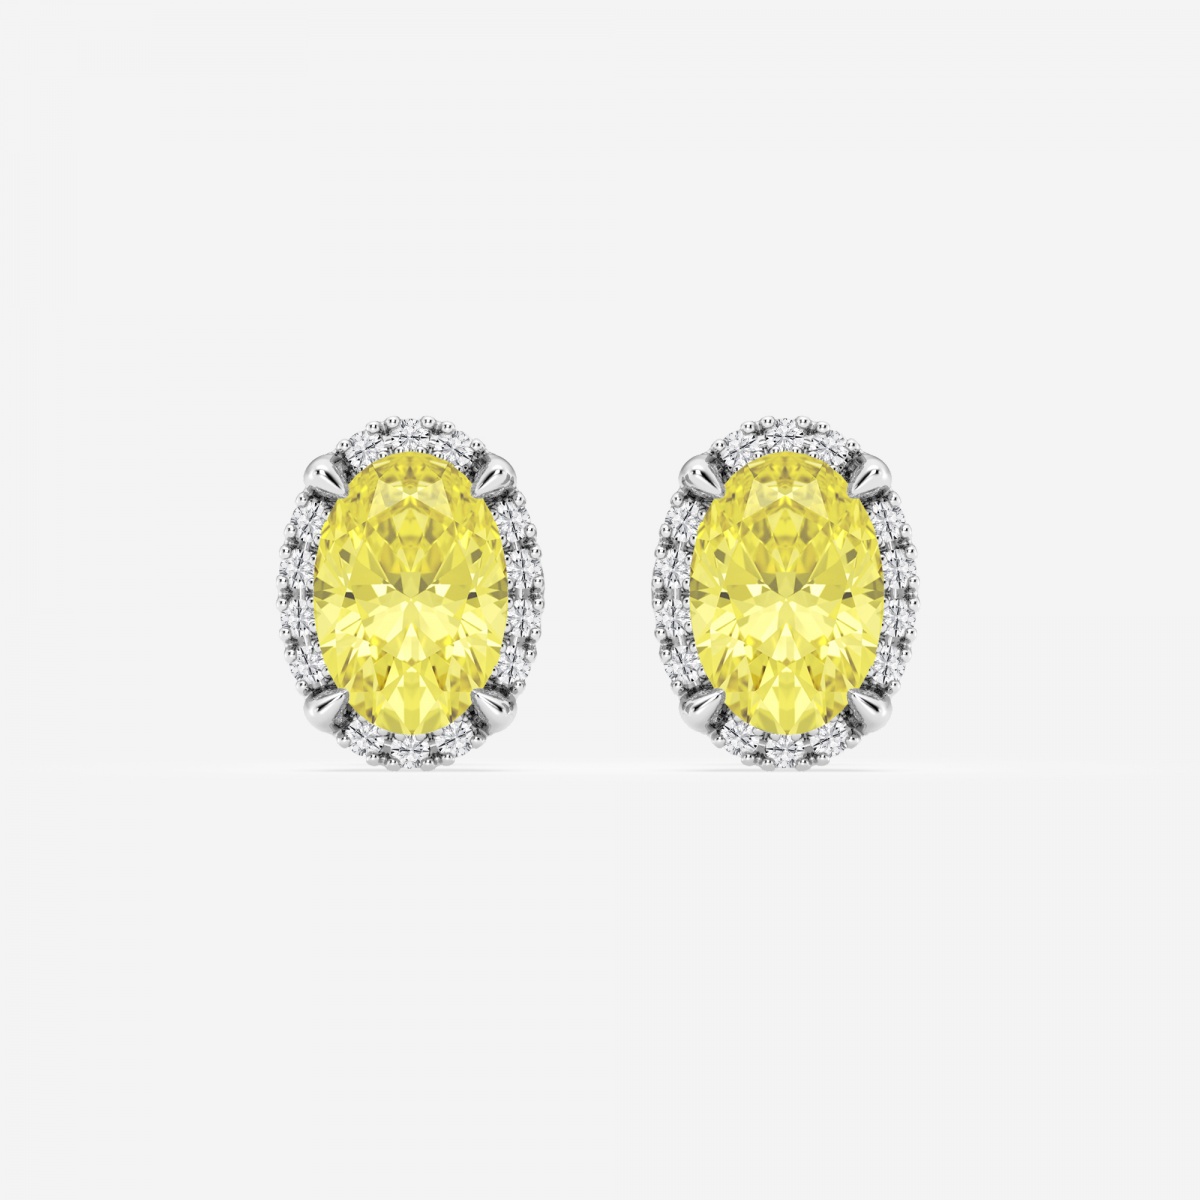 2 1/3 ctw Oval Lab Grown Diamond Fancy Yellow Shadow Halo Stud Earrings